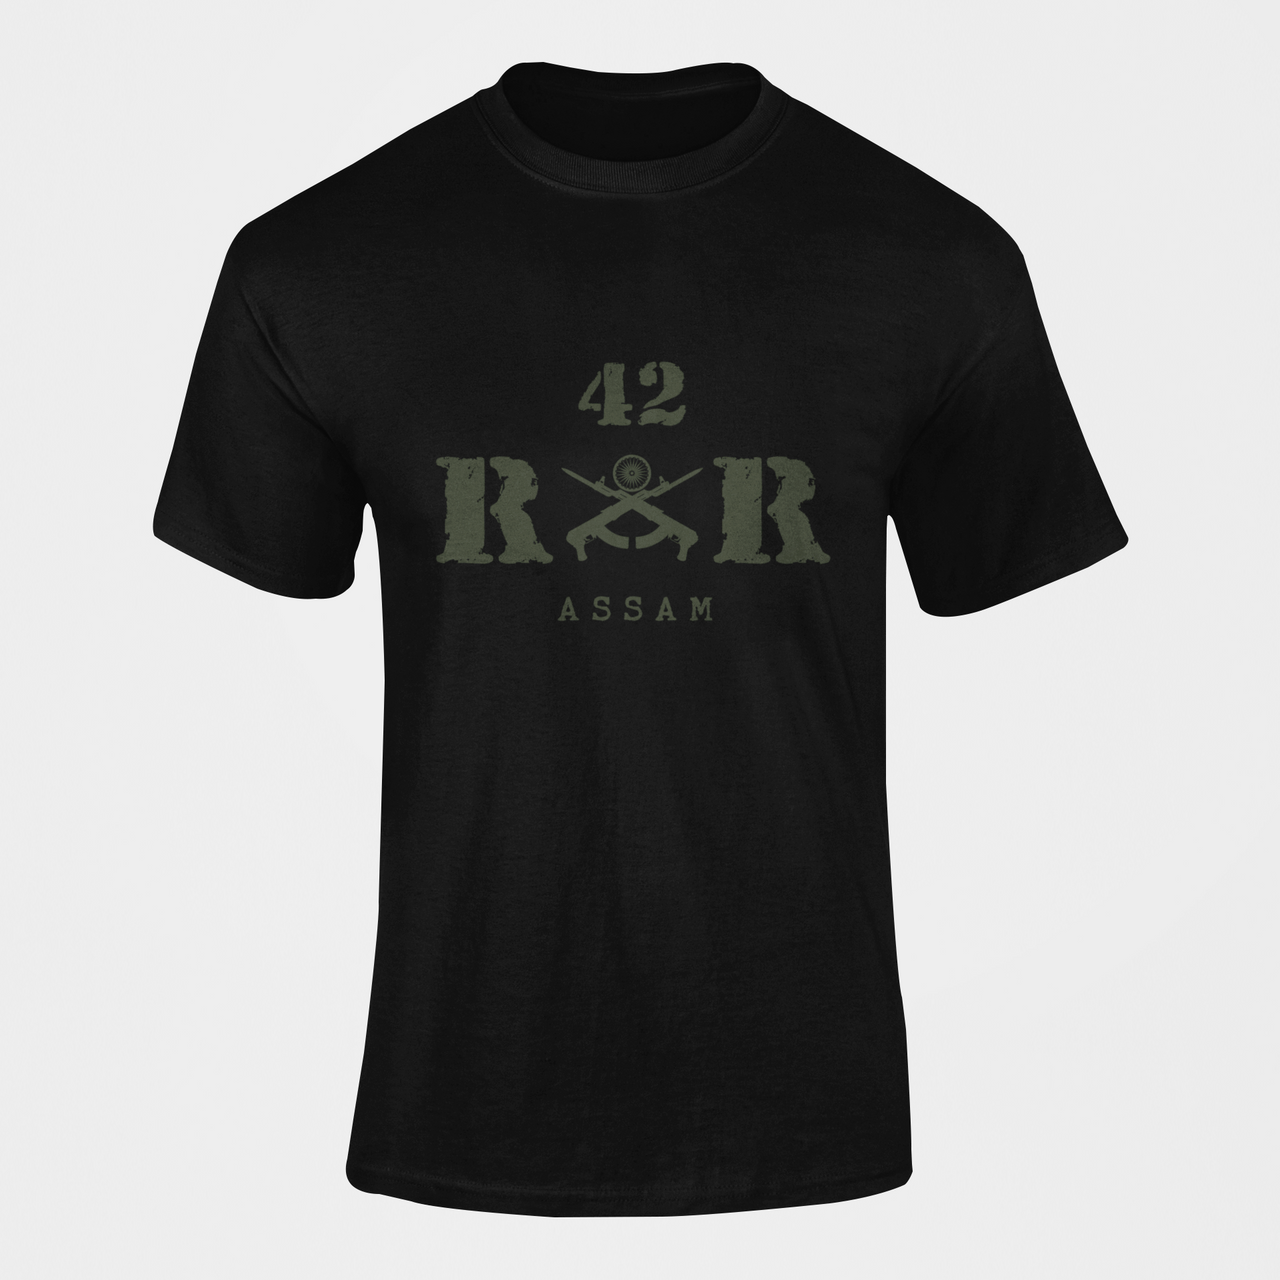 Rashtriya Rifles T-shirt - 42 RR Assam (Men)